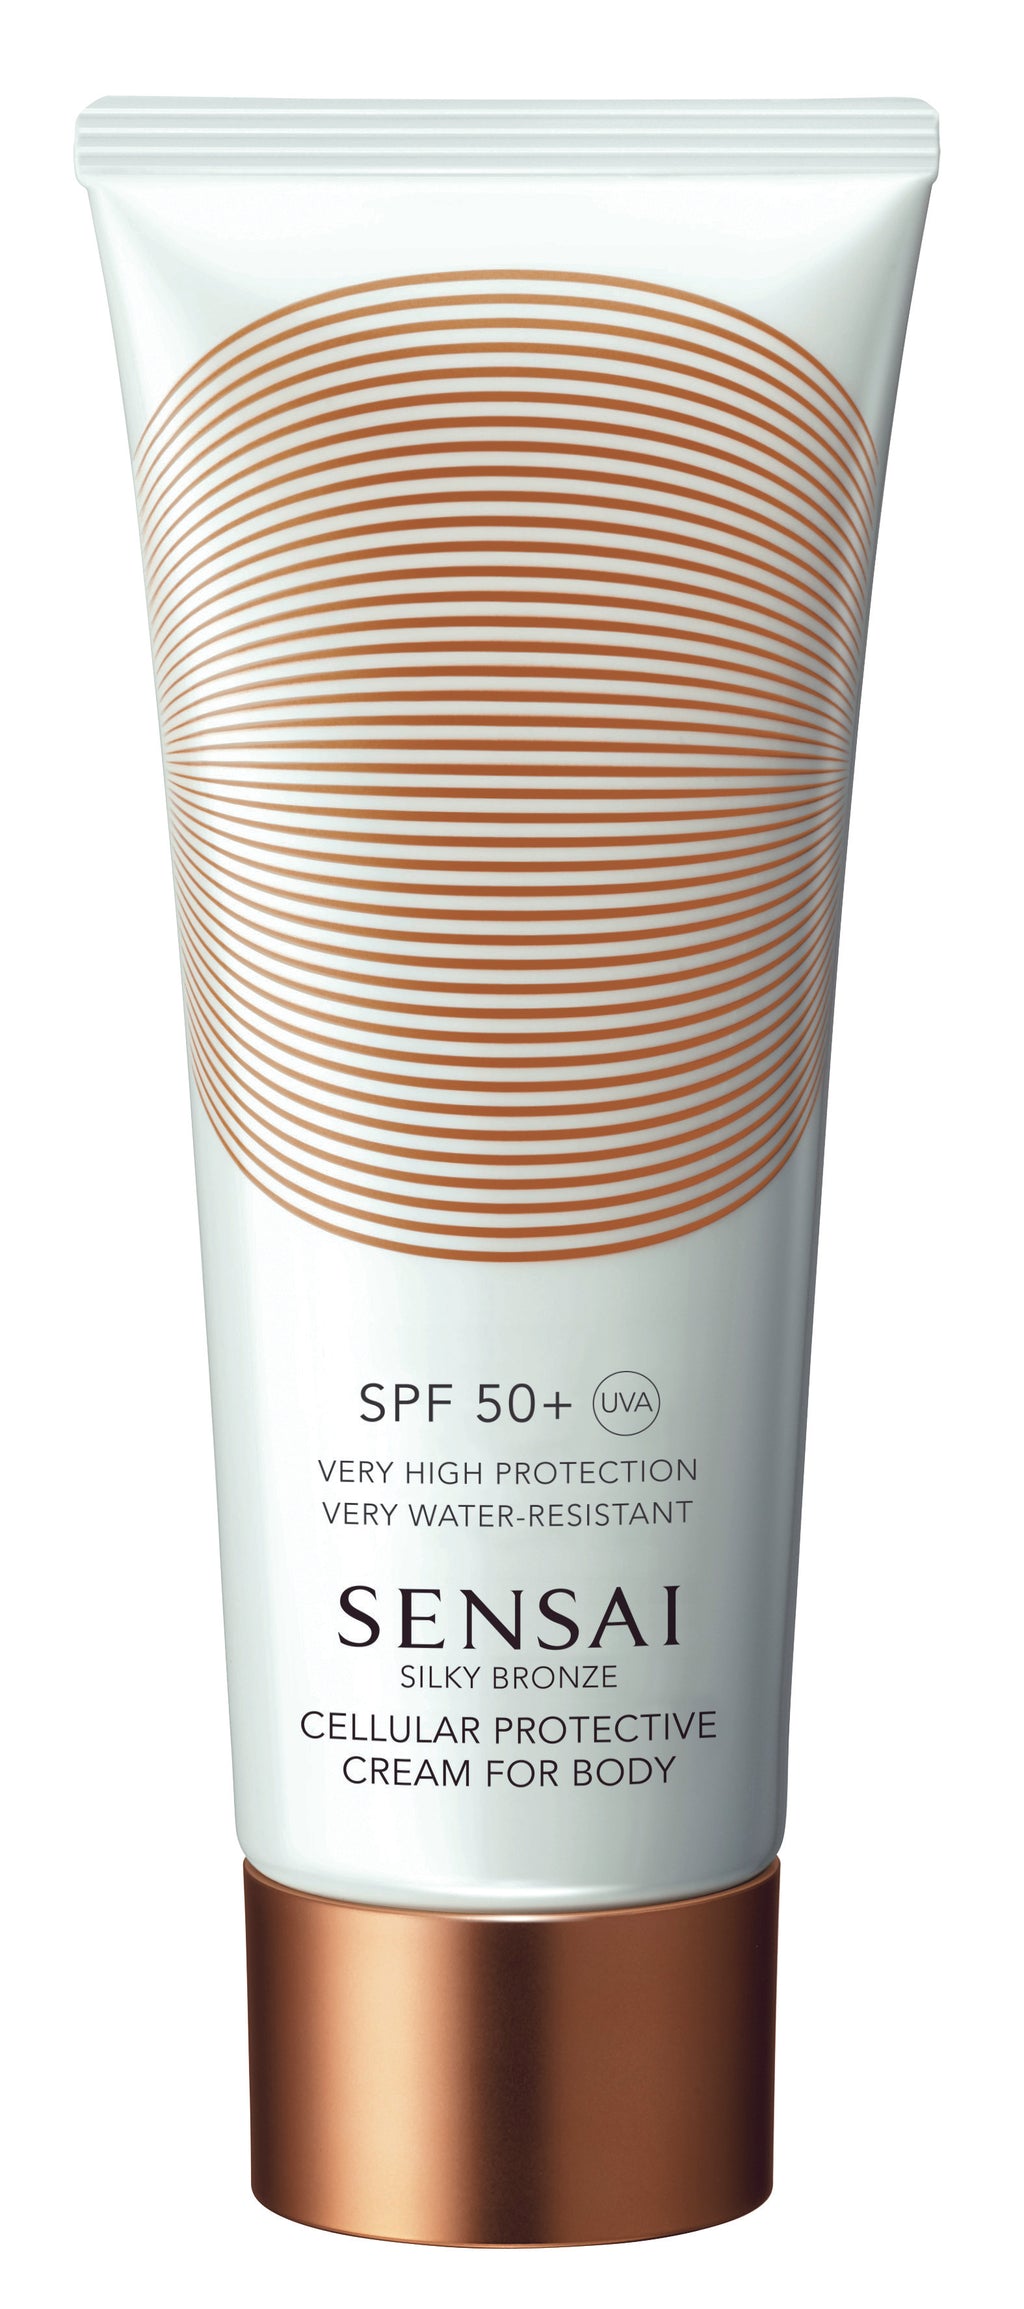 Sensai – Silky Bronze – Cellular Protective Cream For Body SPF50+ - Danae Profumeria